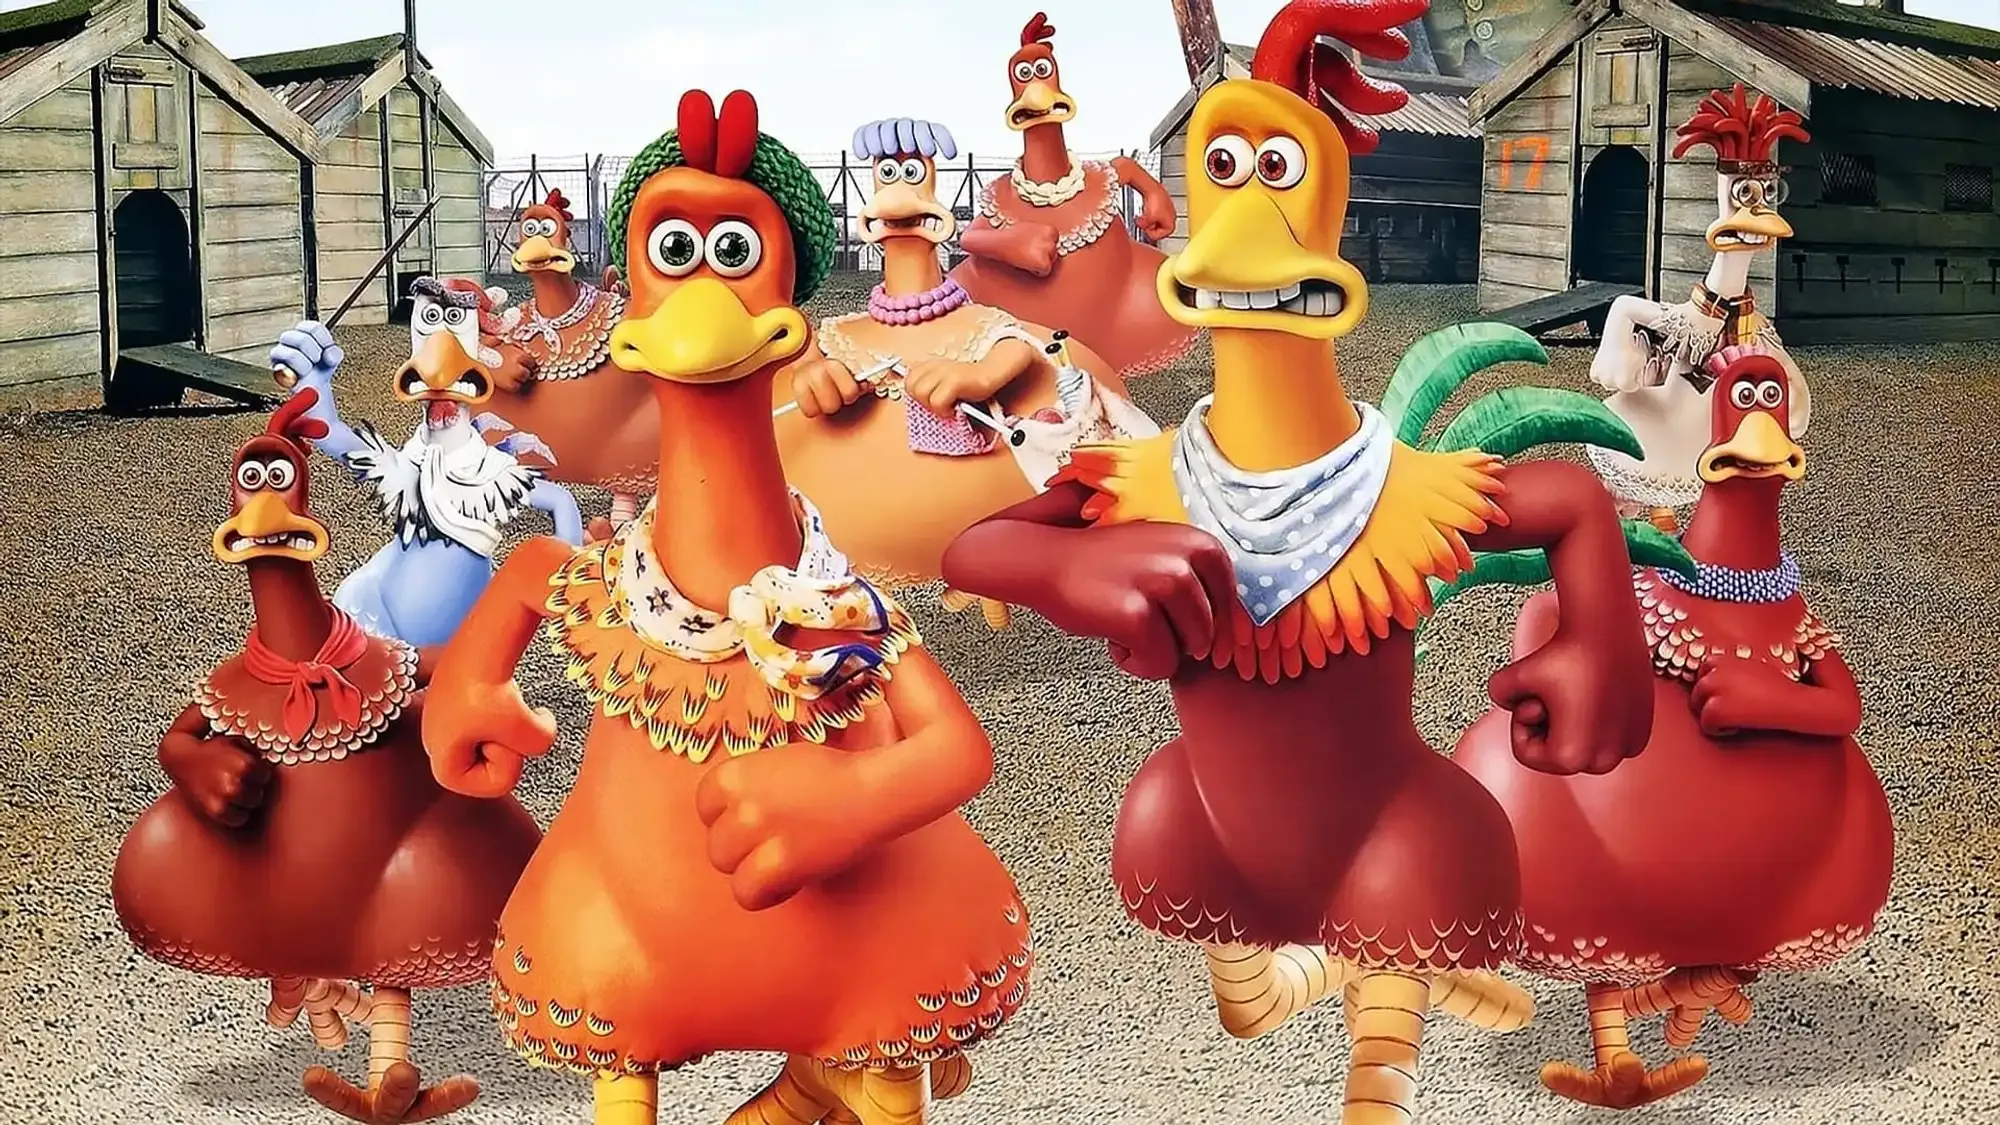 Chicken Run movie review